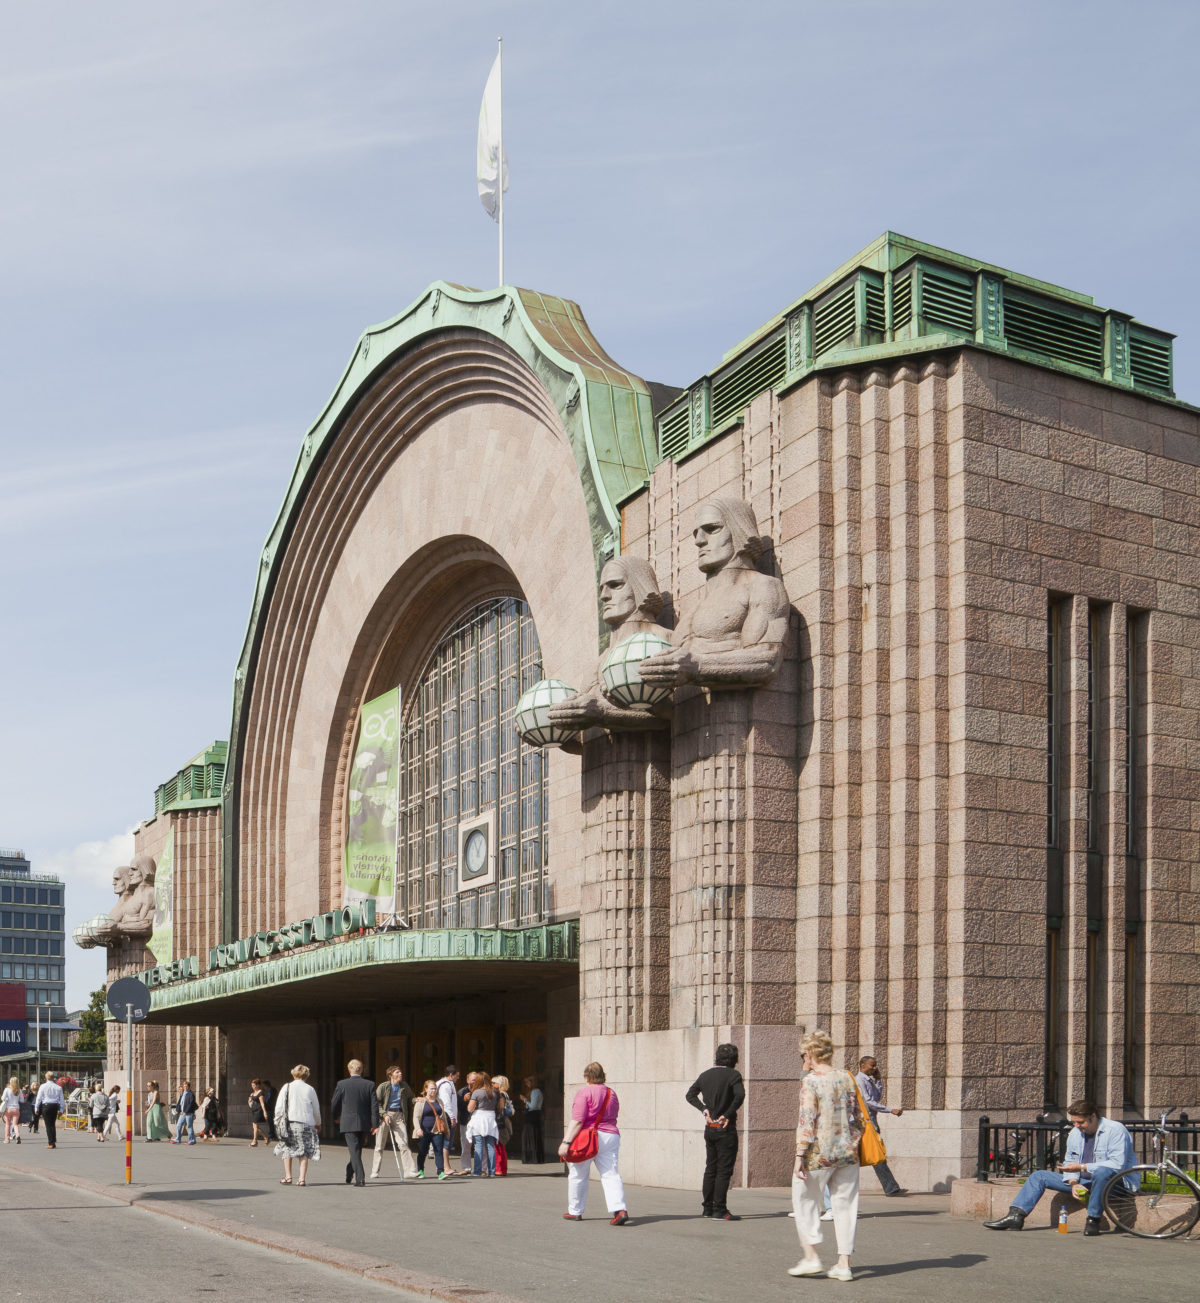 art nouveau architecture à Helsinki gare centrale Eliel Saarinentrain statue homme porteur lanterne globe Emil Wikstrom